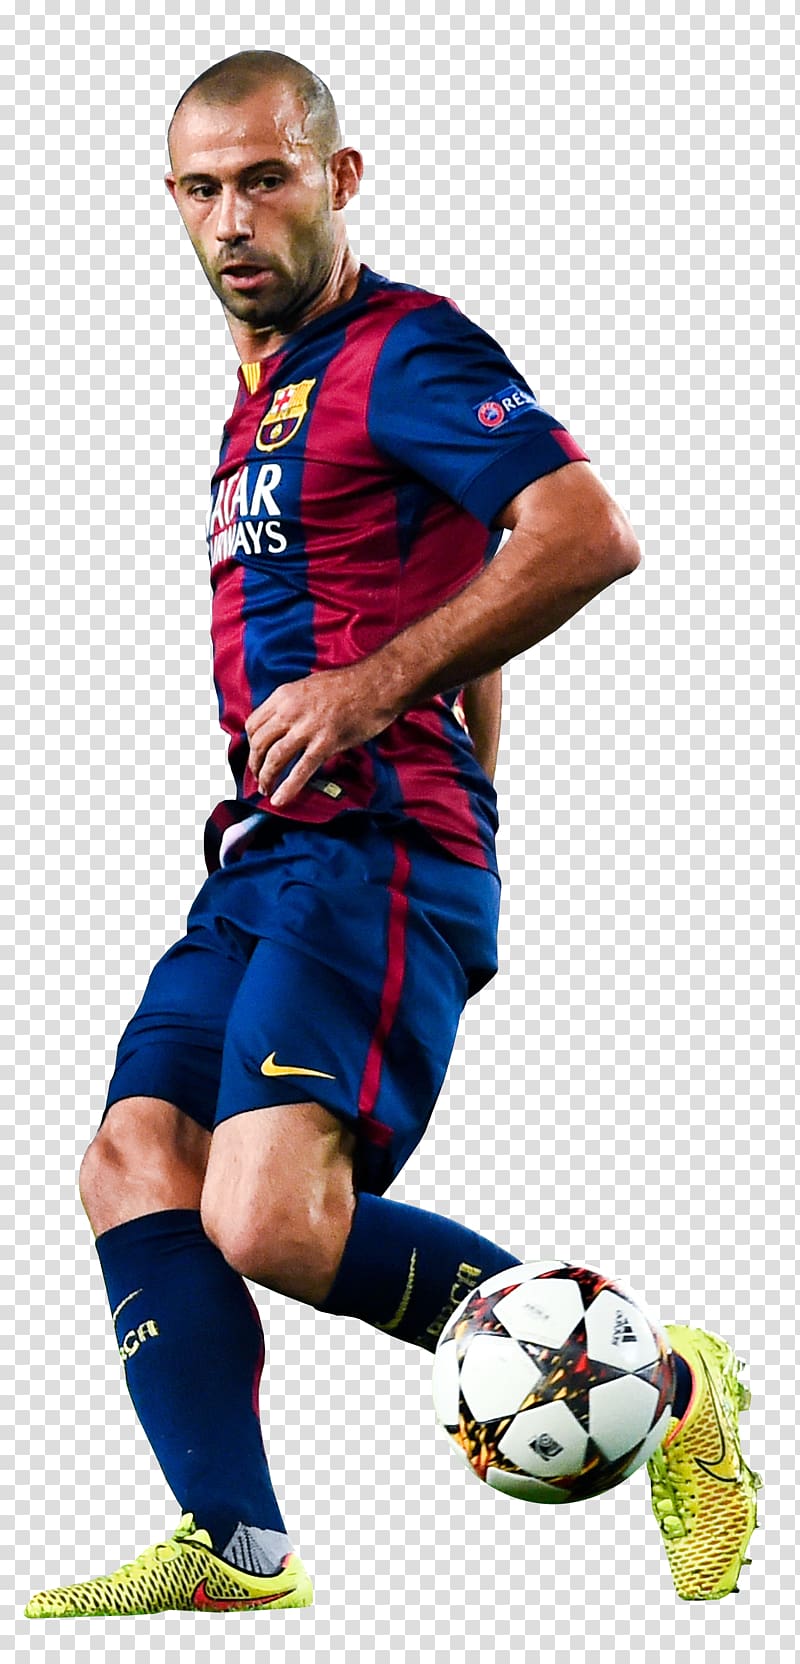 Javier Mascherano Team sport Jersey Football player, football transparent background PNG clipart